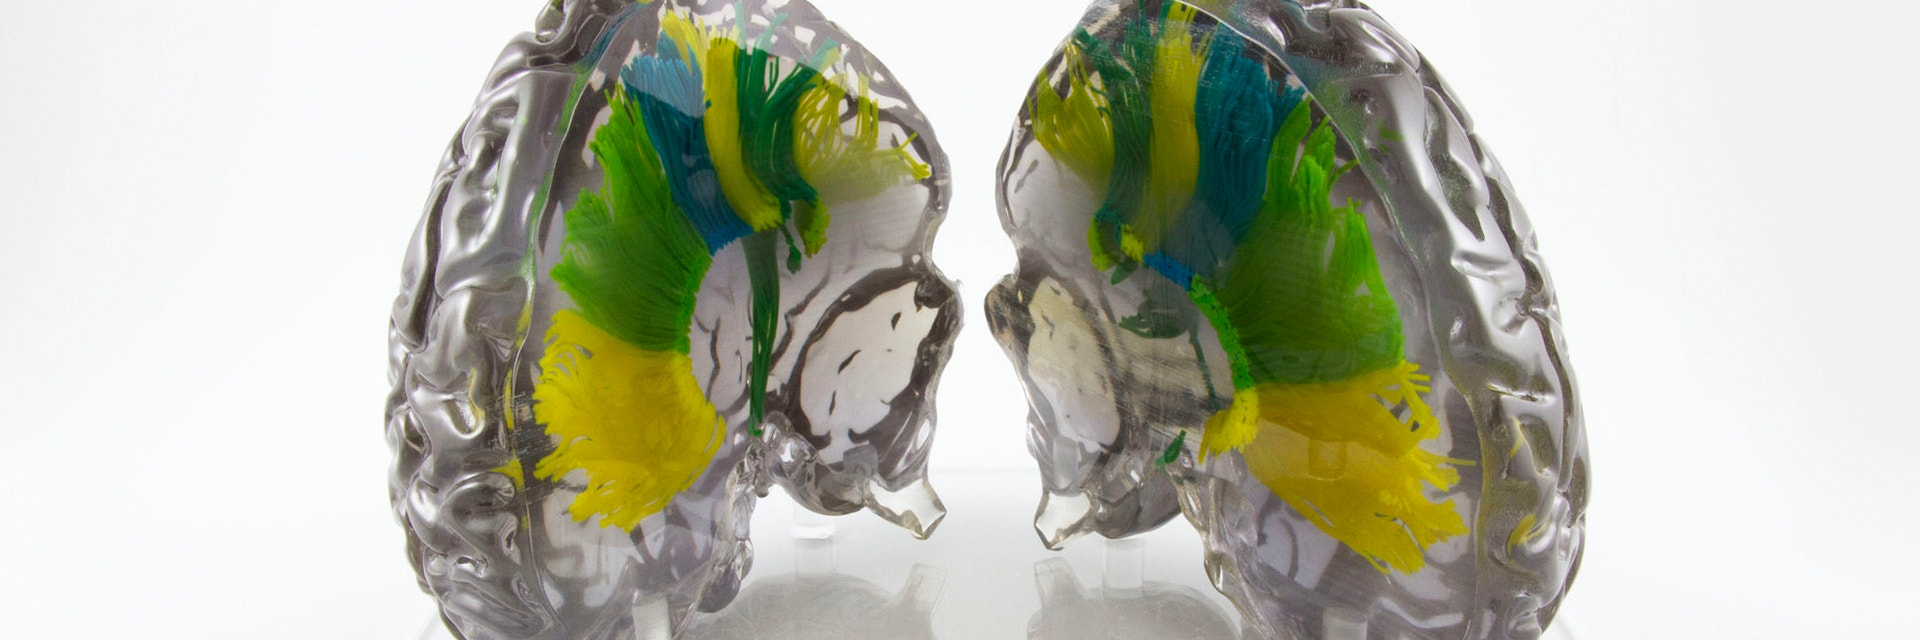 3D-gedrucktes anatomisches Modell des menschlichen Gehirns